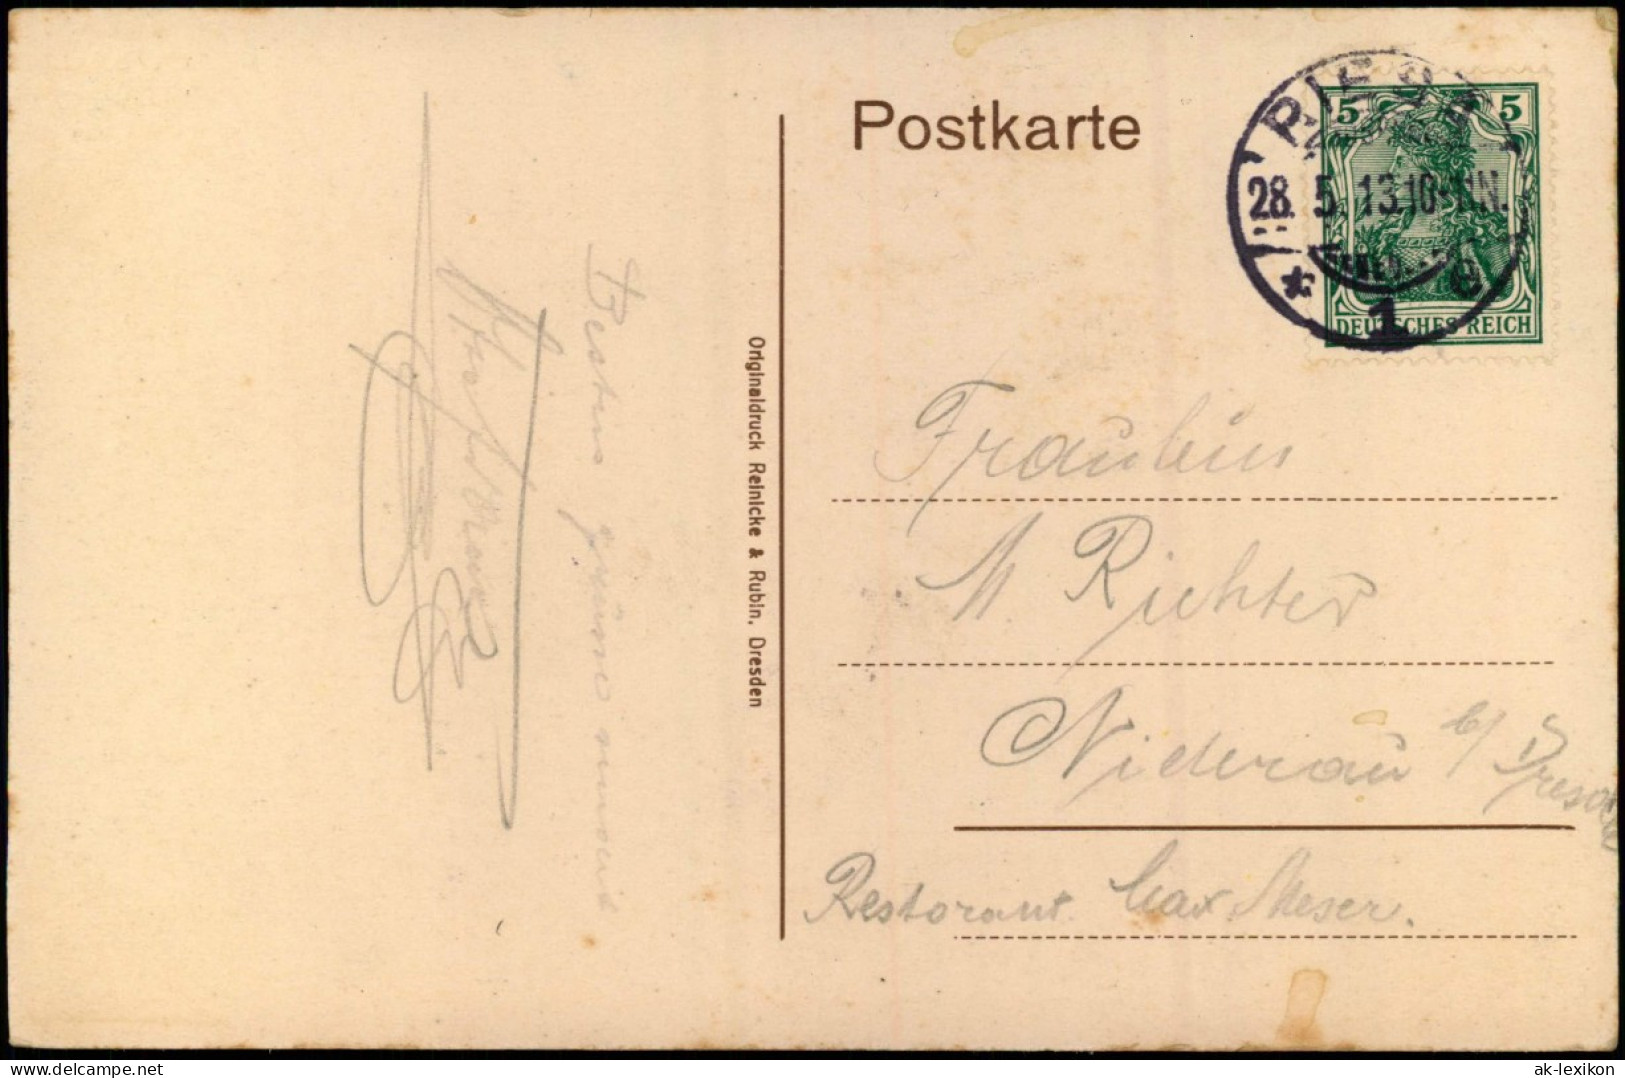 Ansichtskarte Riesa Partie Am Stadtpark 1912 - Riesa